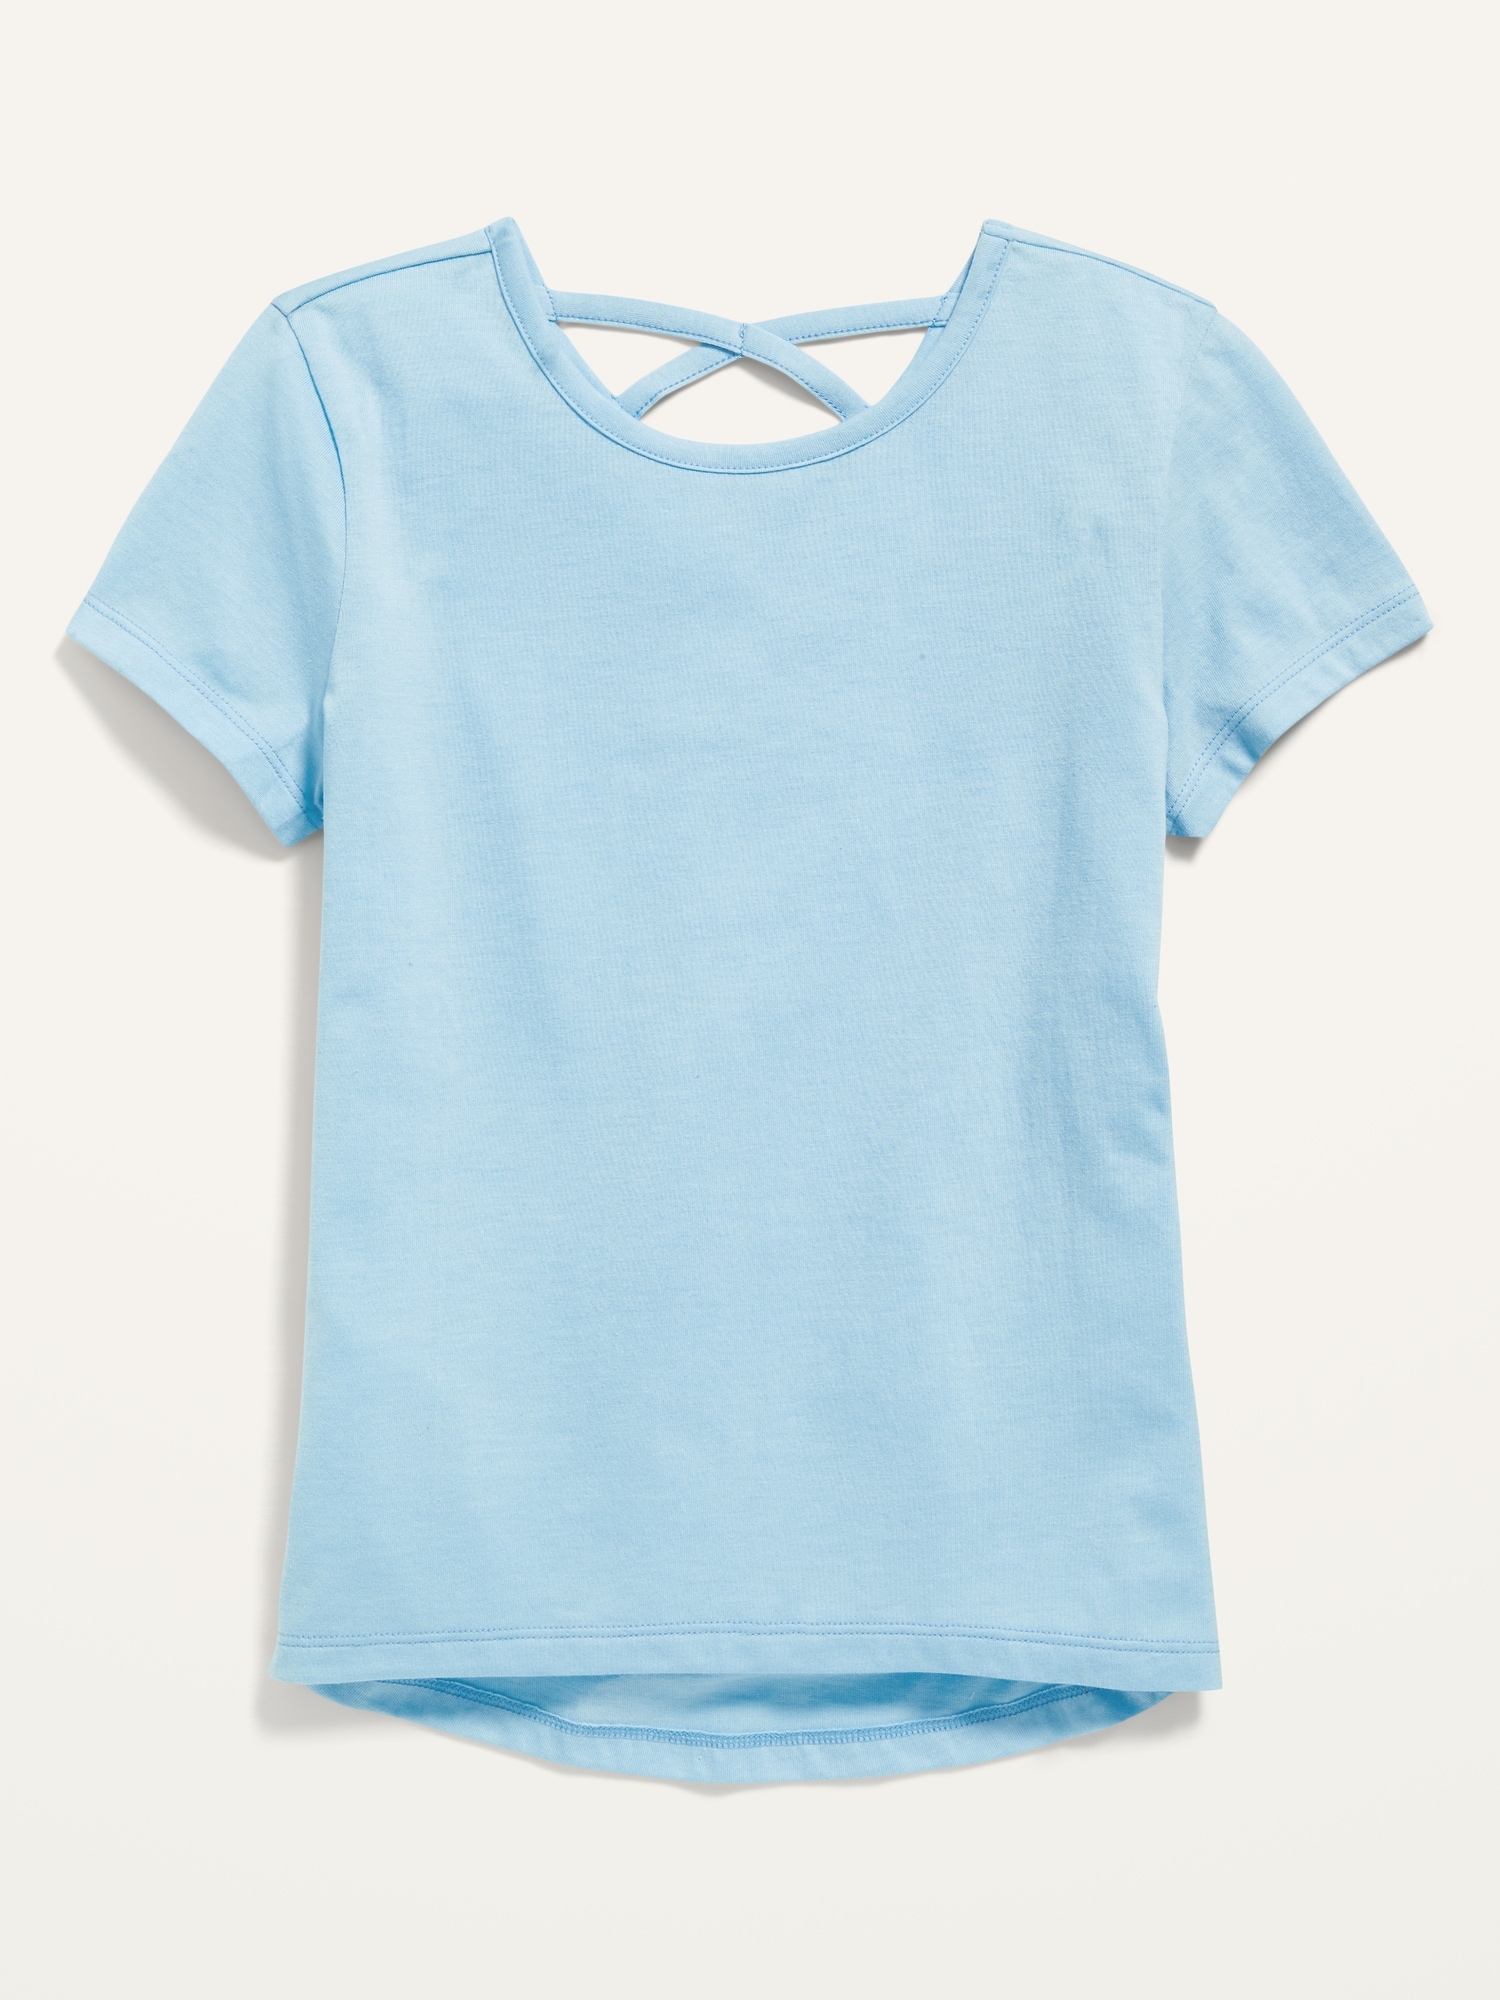 Oldnavy Softest Lattice-Back T-Shirt for Girls